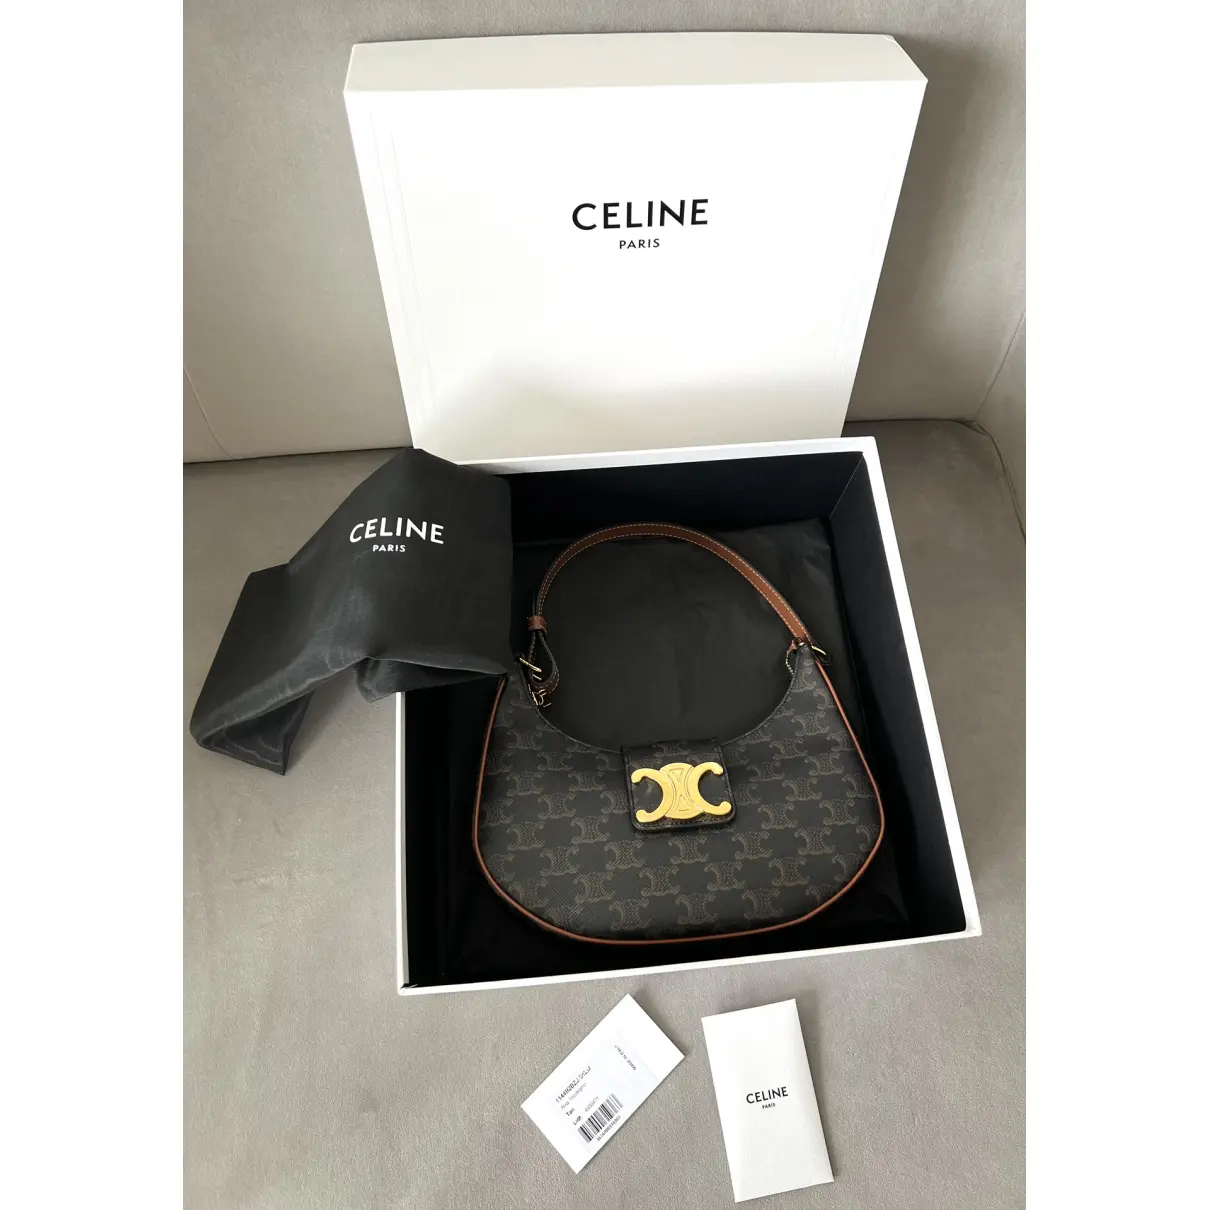 Buy Celine Ava cloth handbag online